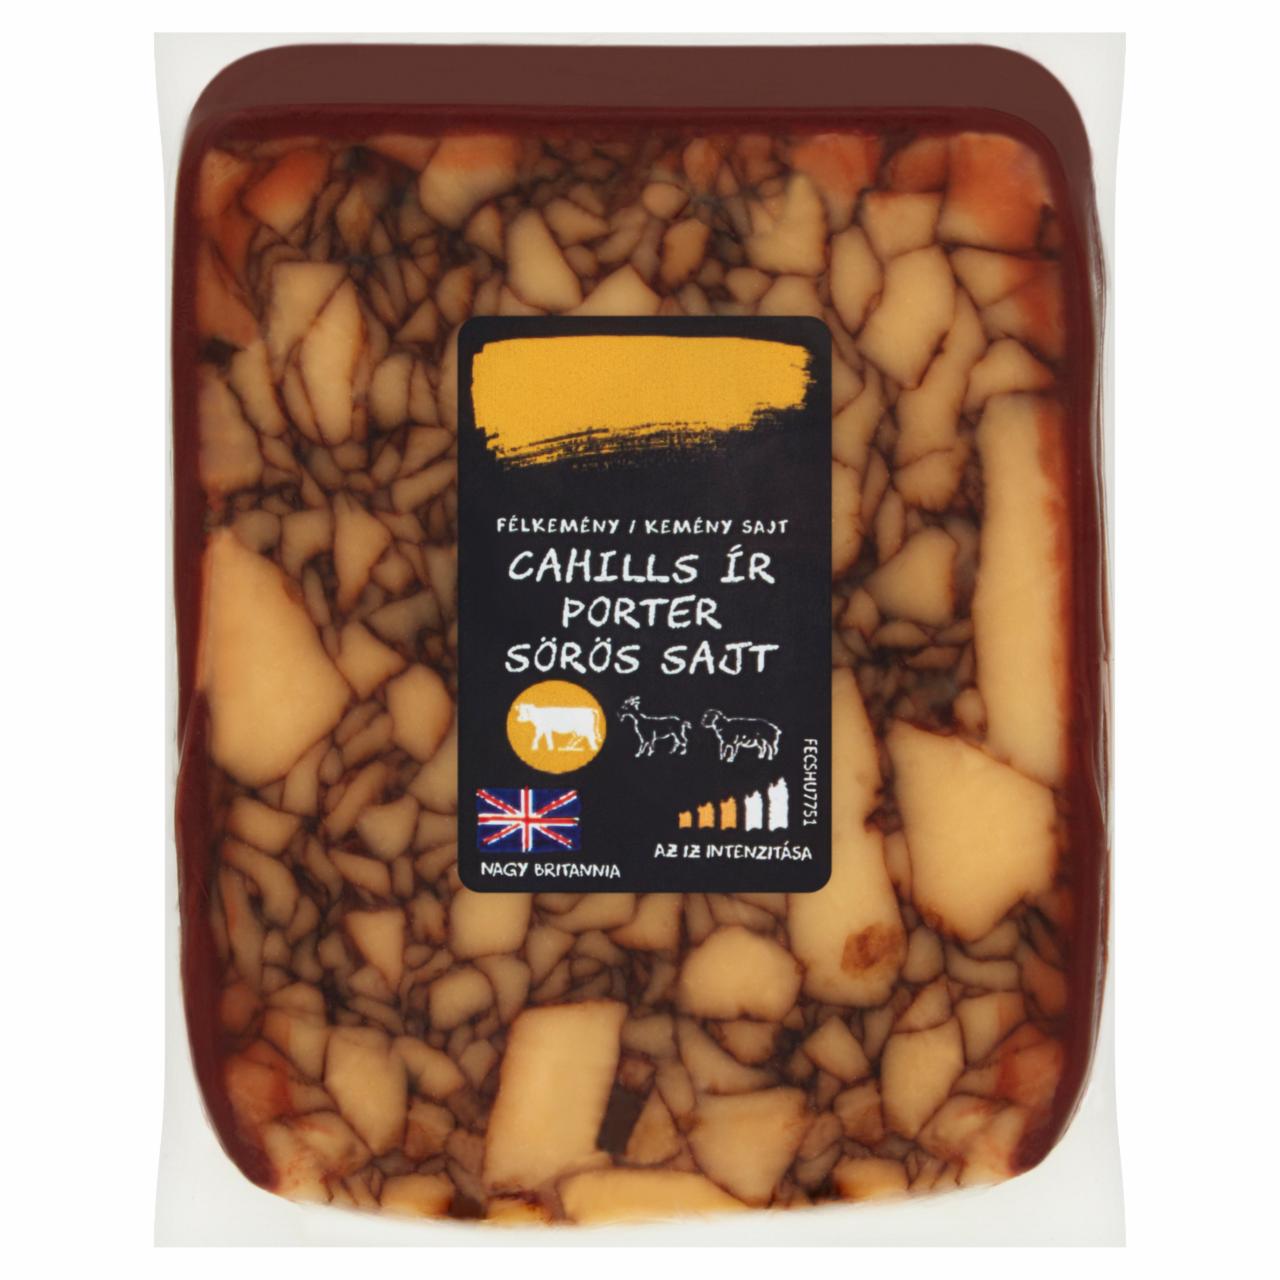 Képek - Cahills ír porter sörös félkemény/kemény sajt